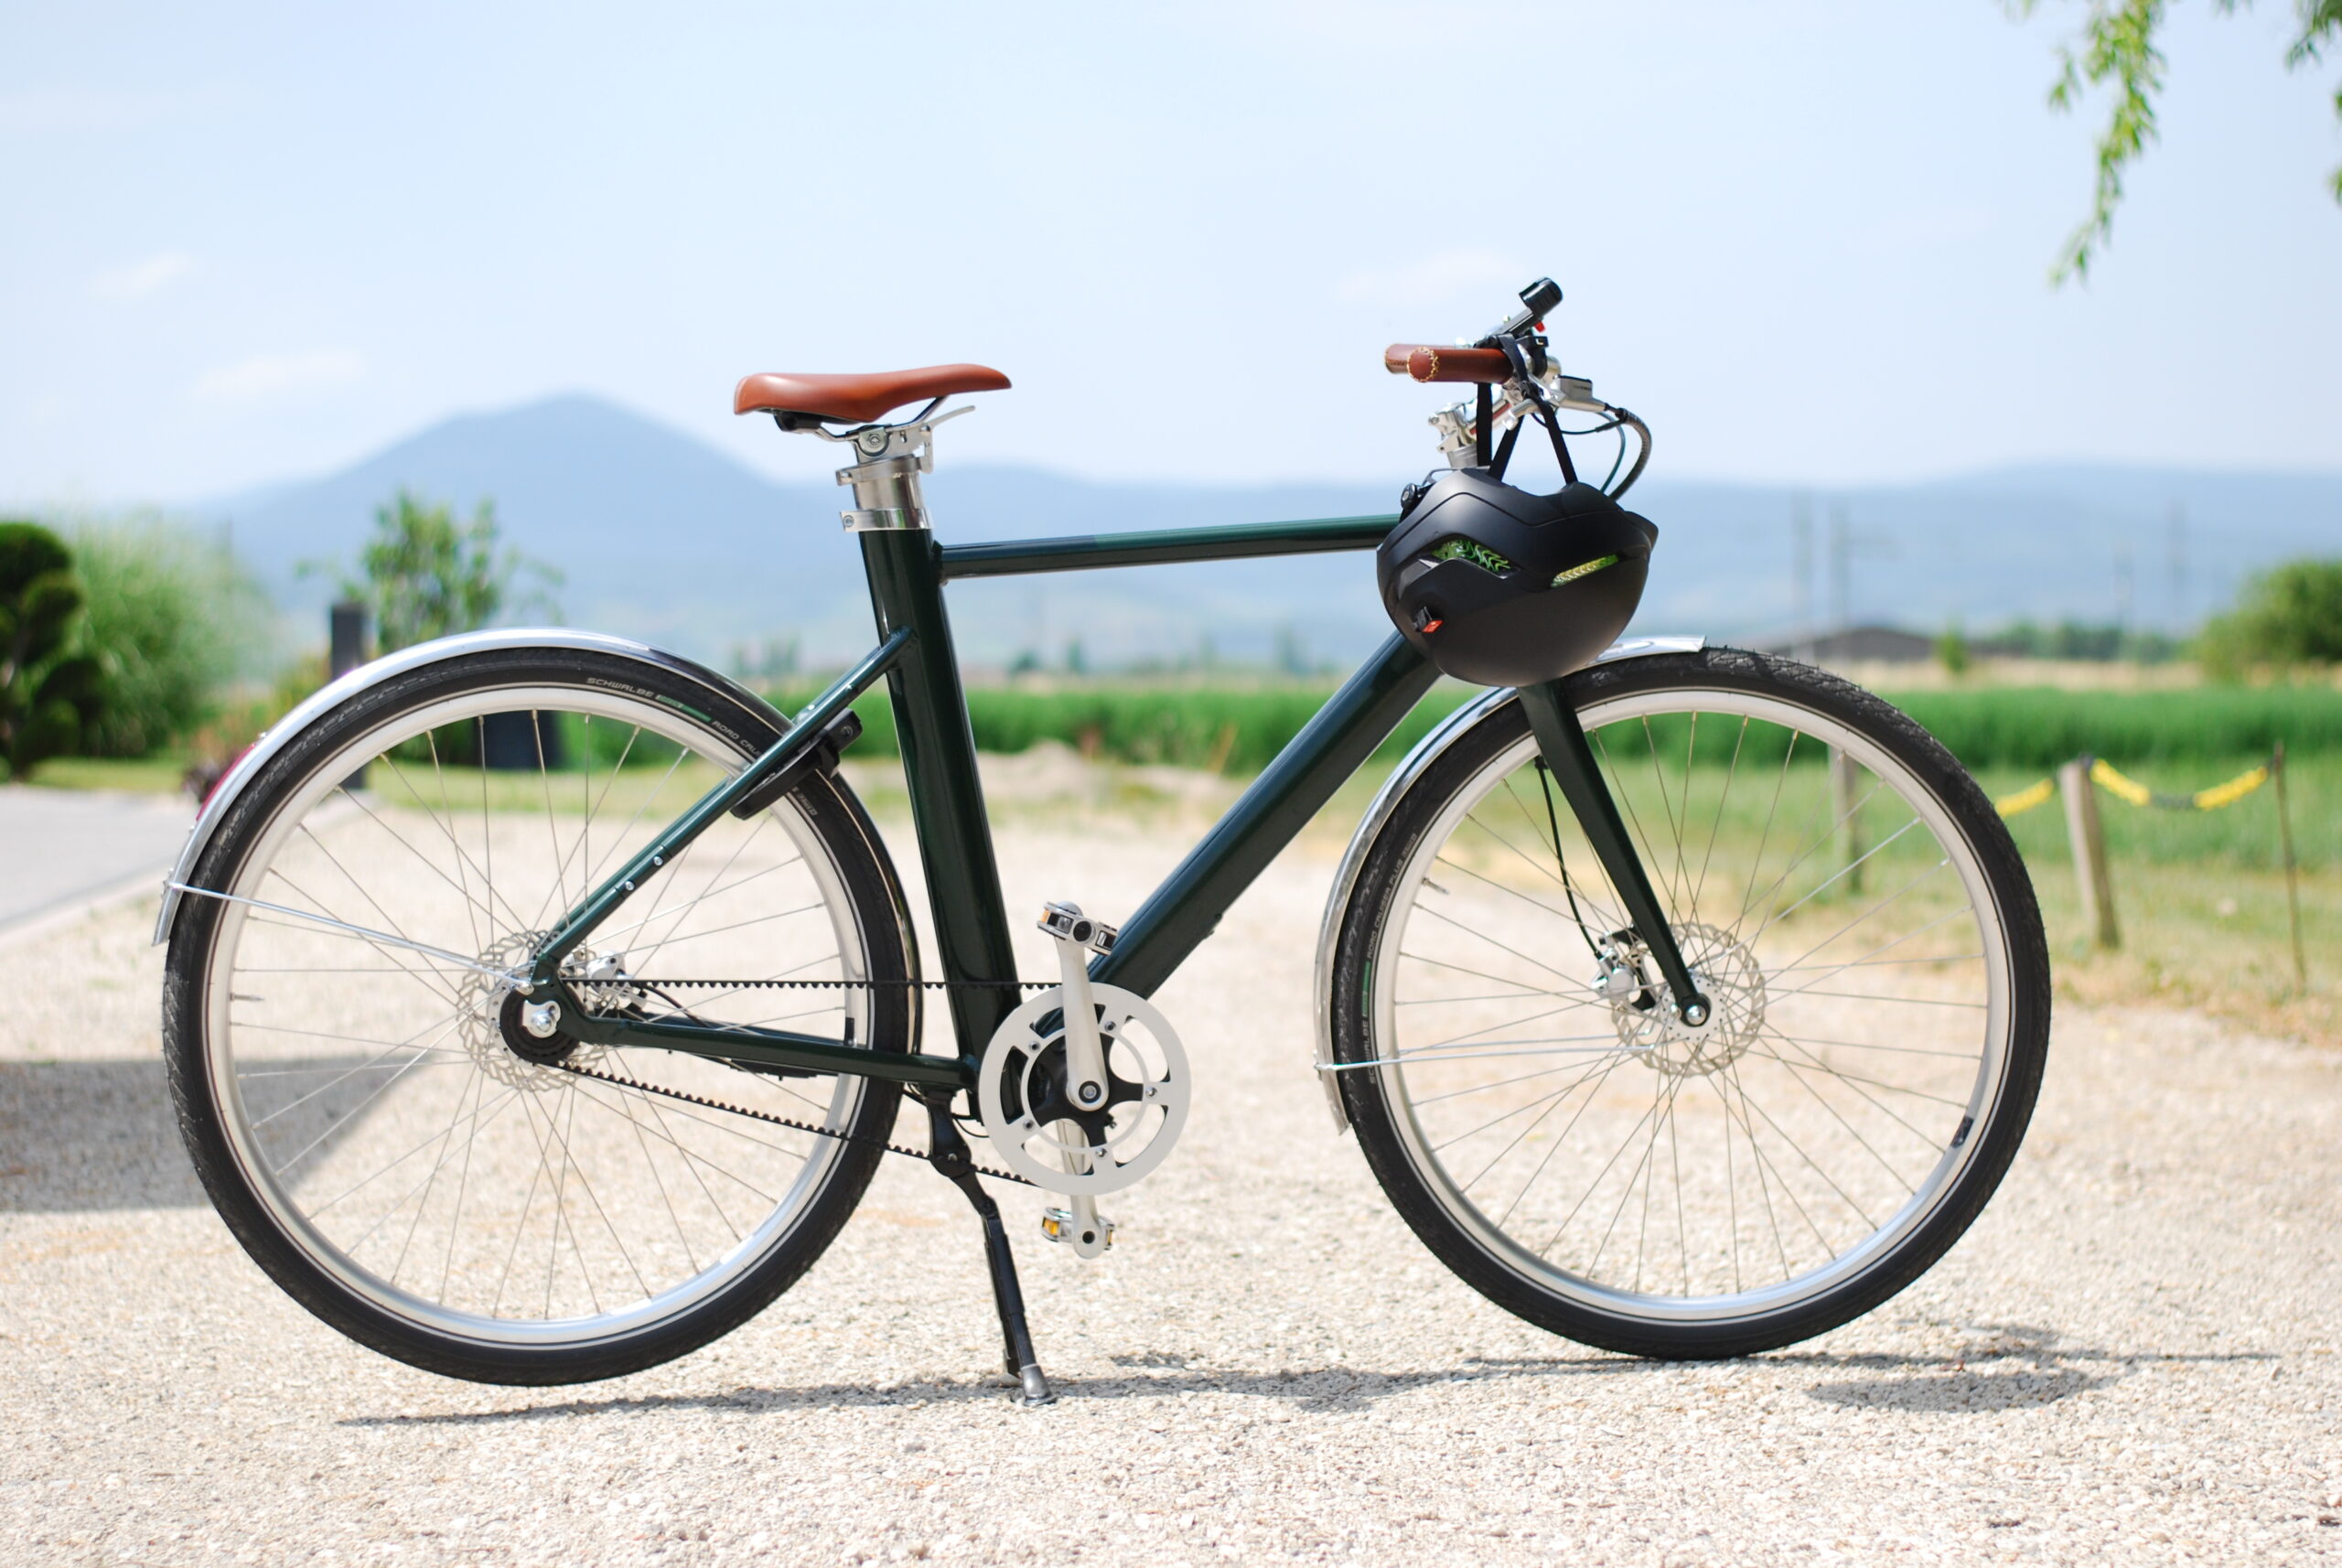 Test Bontrager Starvos Wavecel : un casque vélo léger et protecteur - Les  Numériques